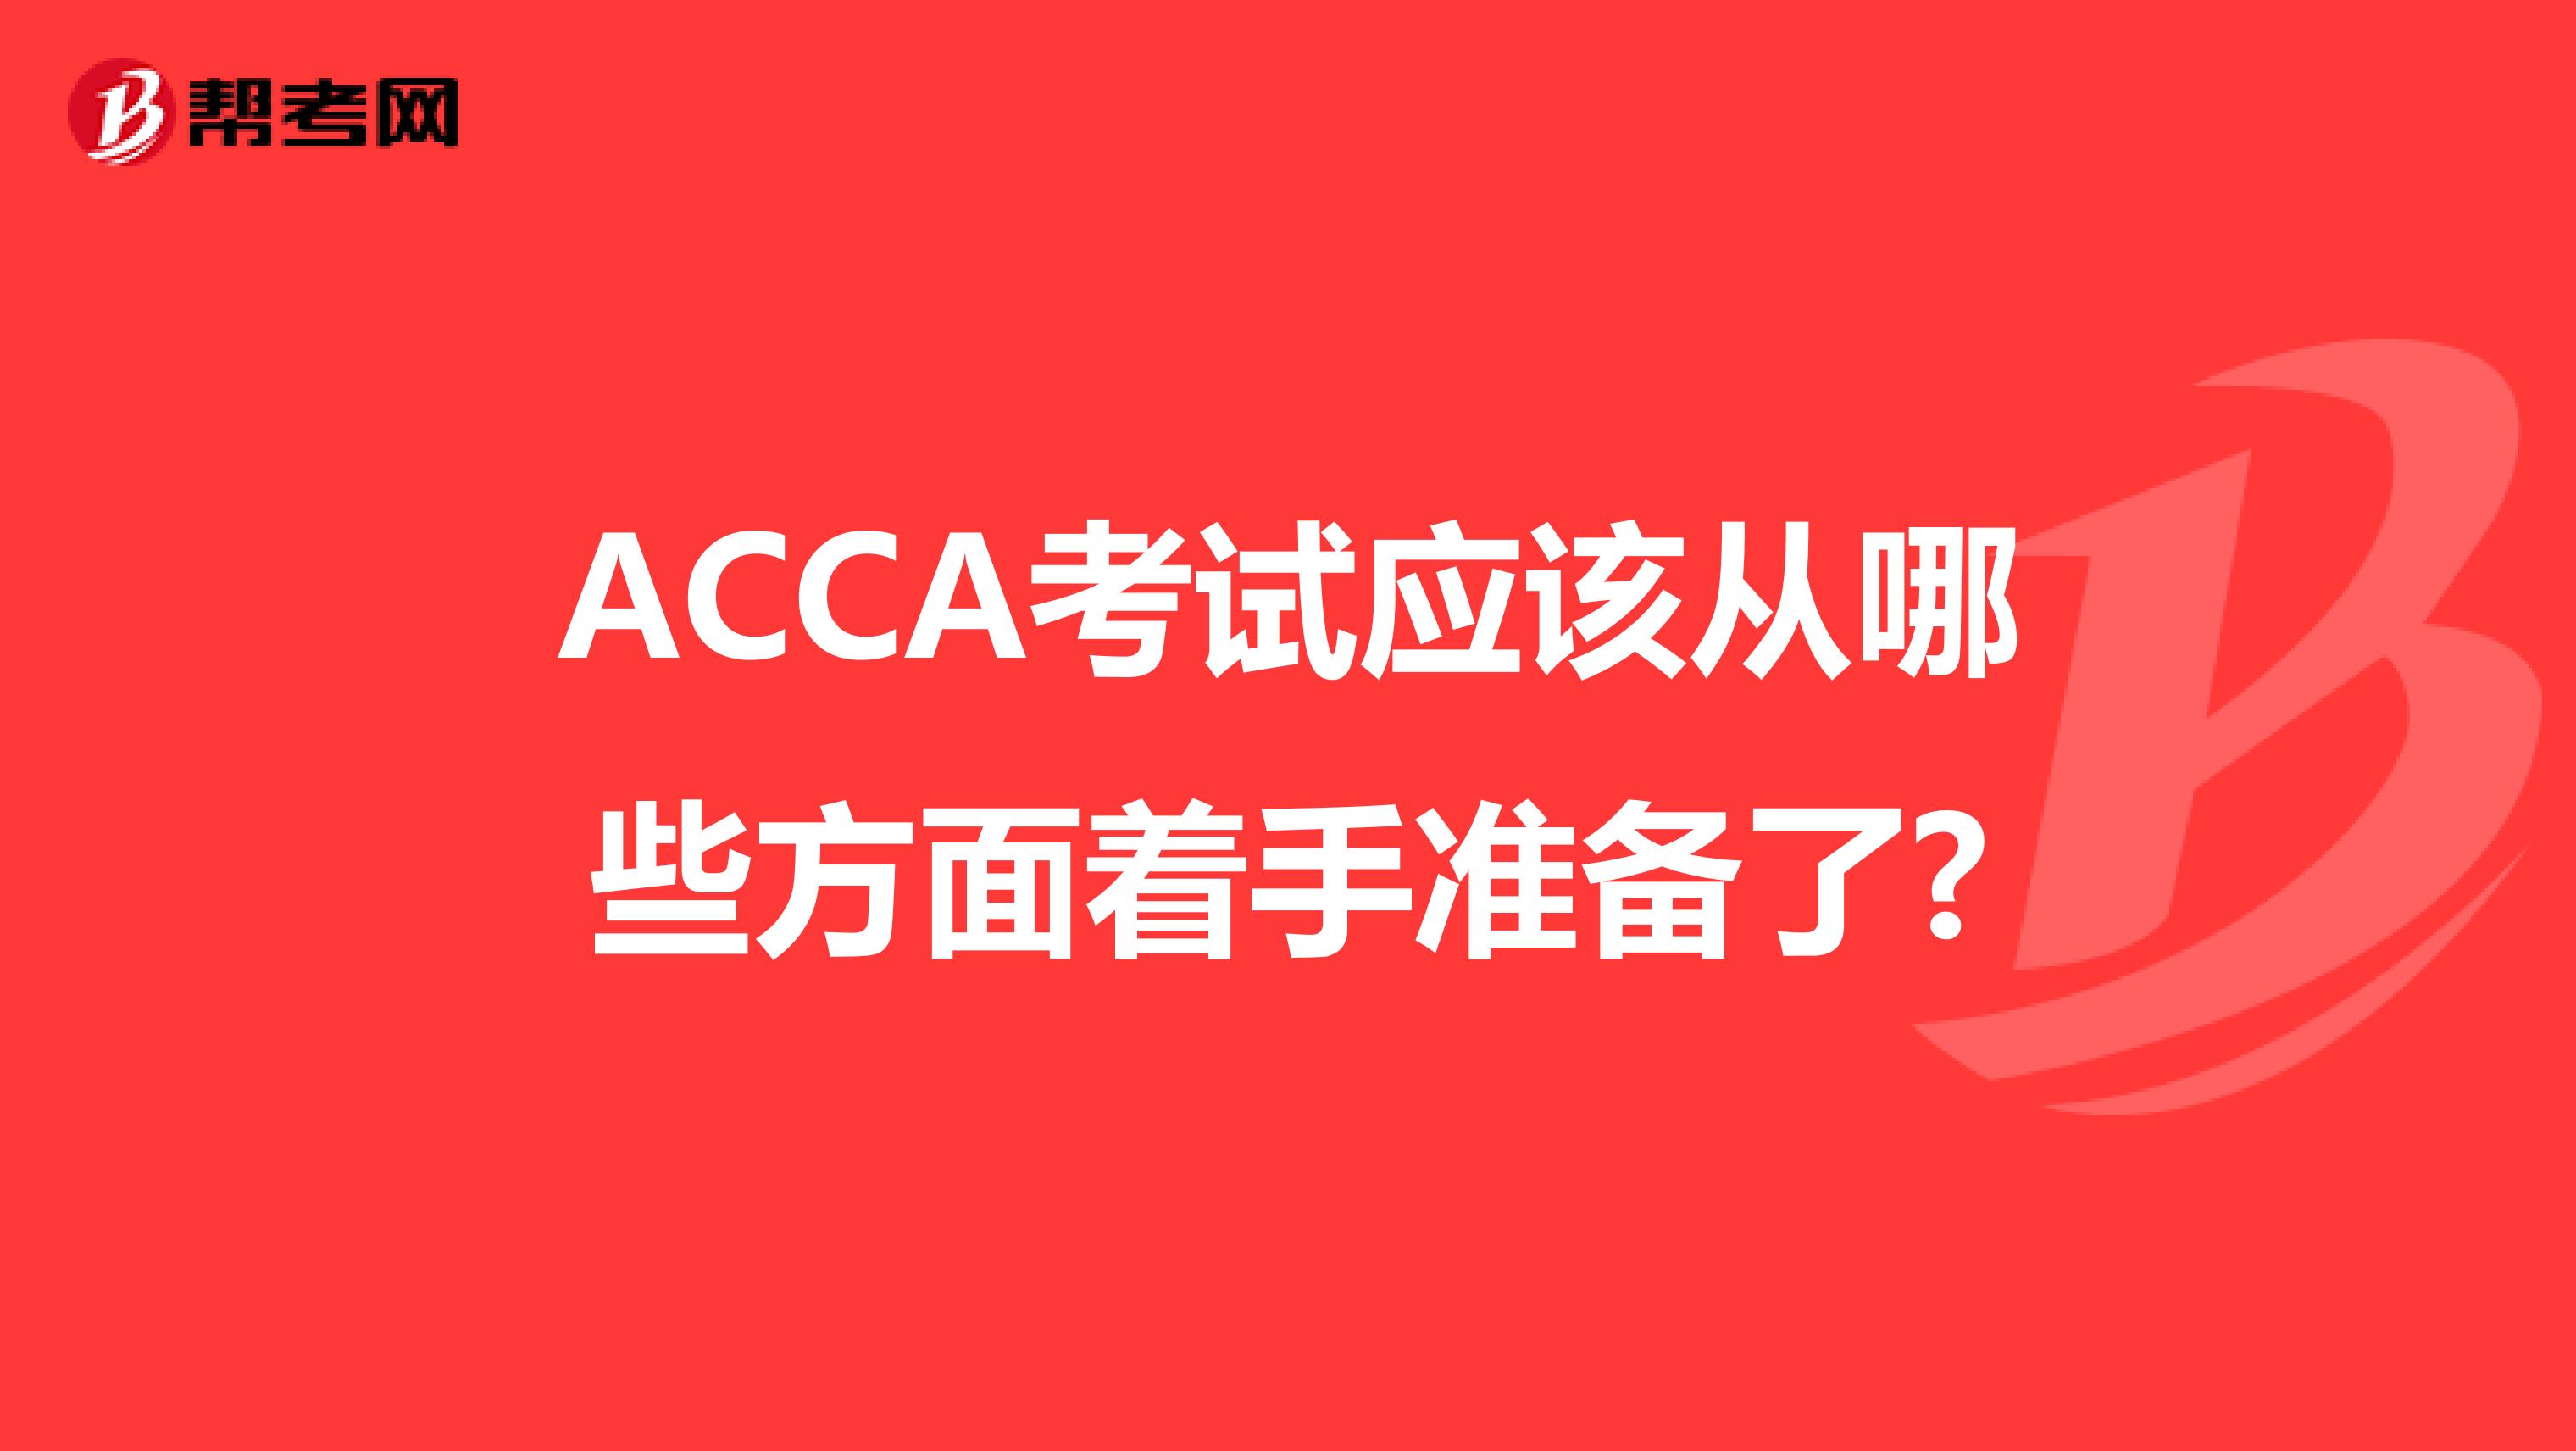 ACCA考试应该从哪些方面着手准备了?